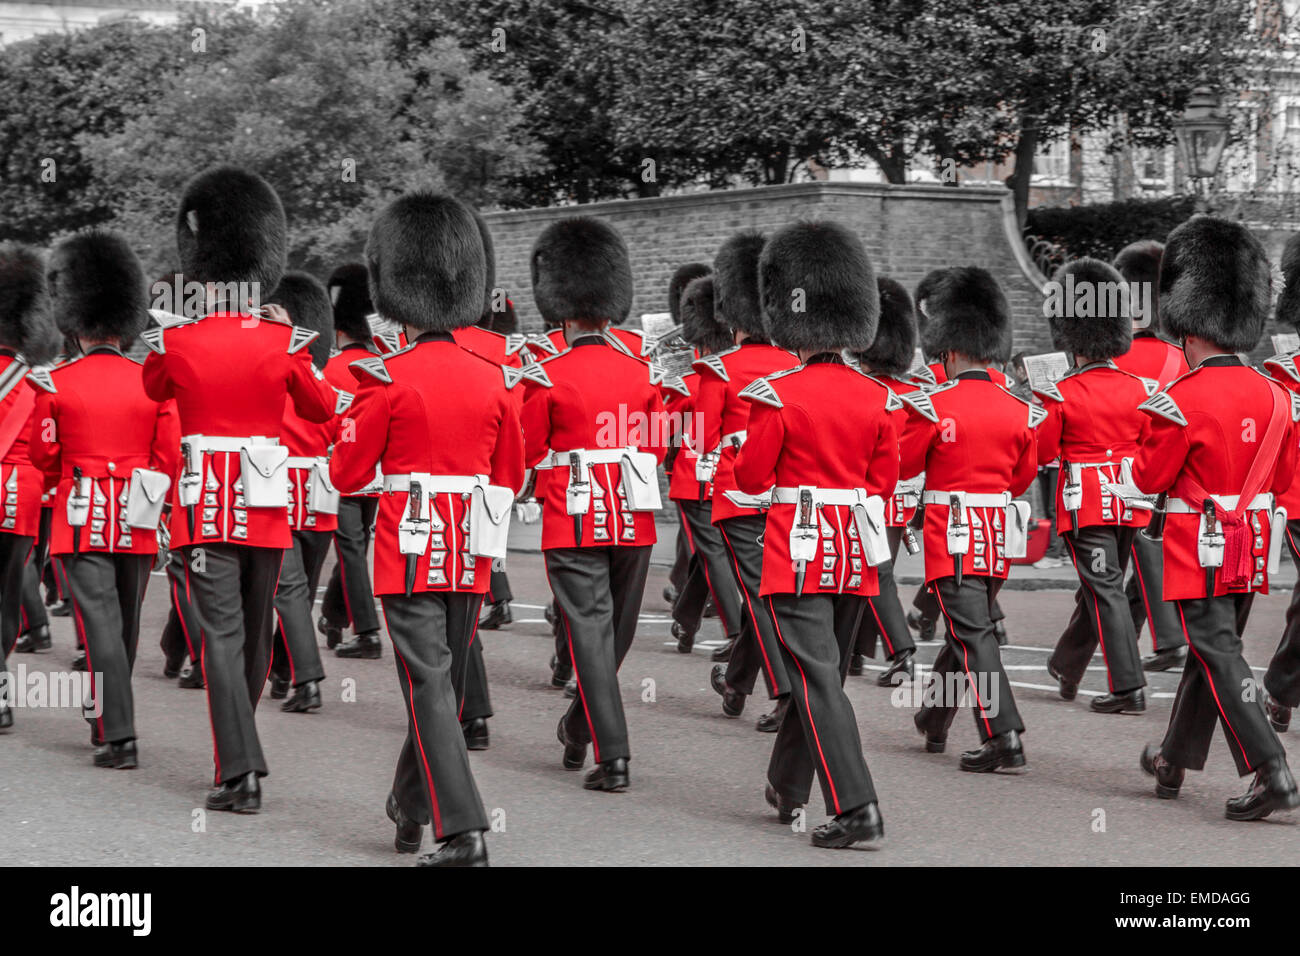 Una imagen de la banda regimental del regimiento de Coldstream Guards marchando hacia St James's Palace, Londres, Inglaterra Foto de stock